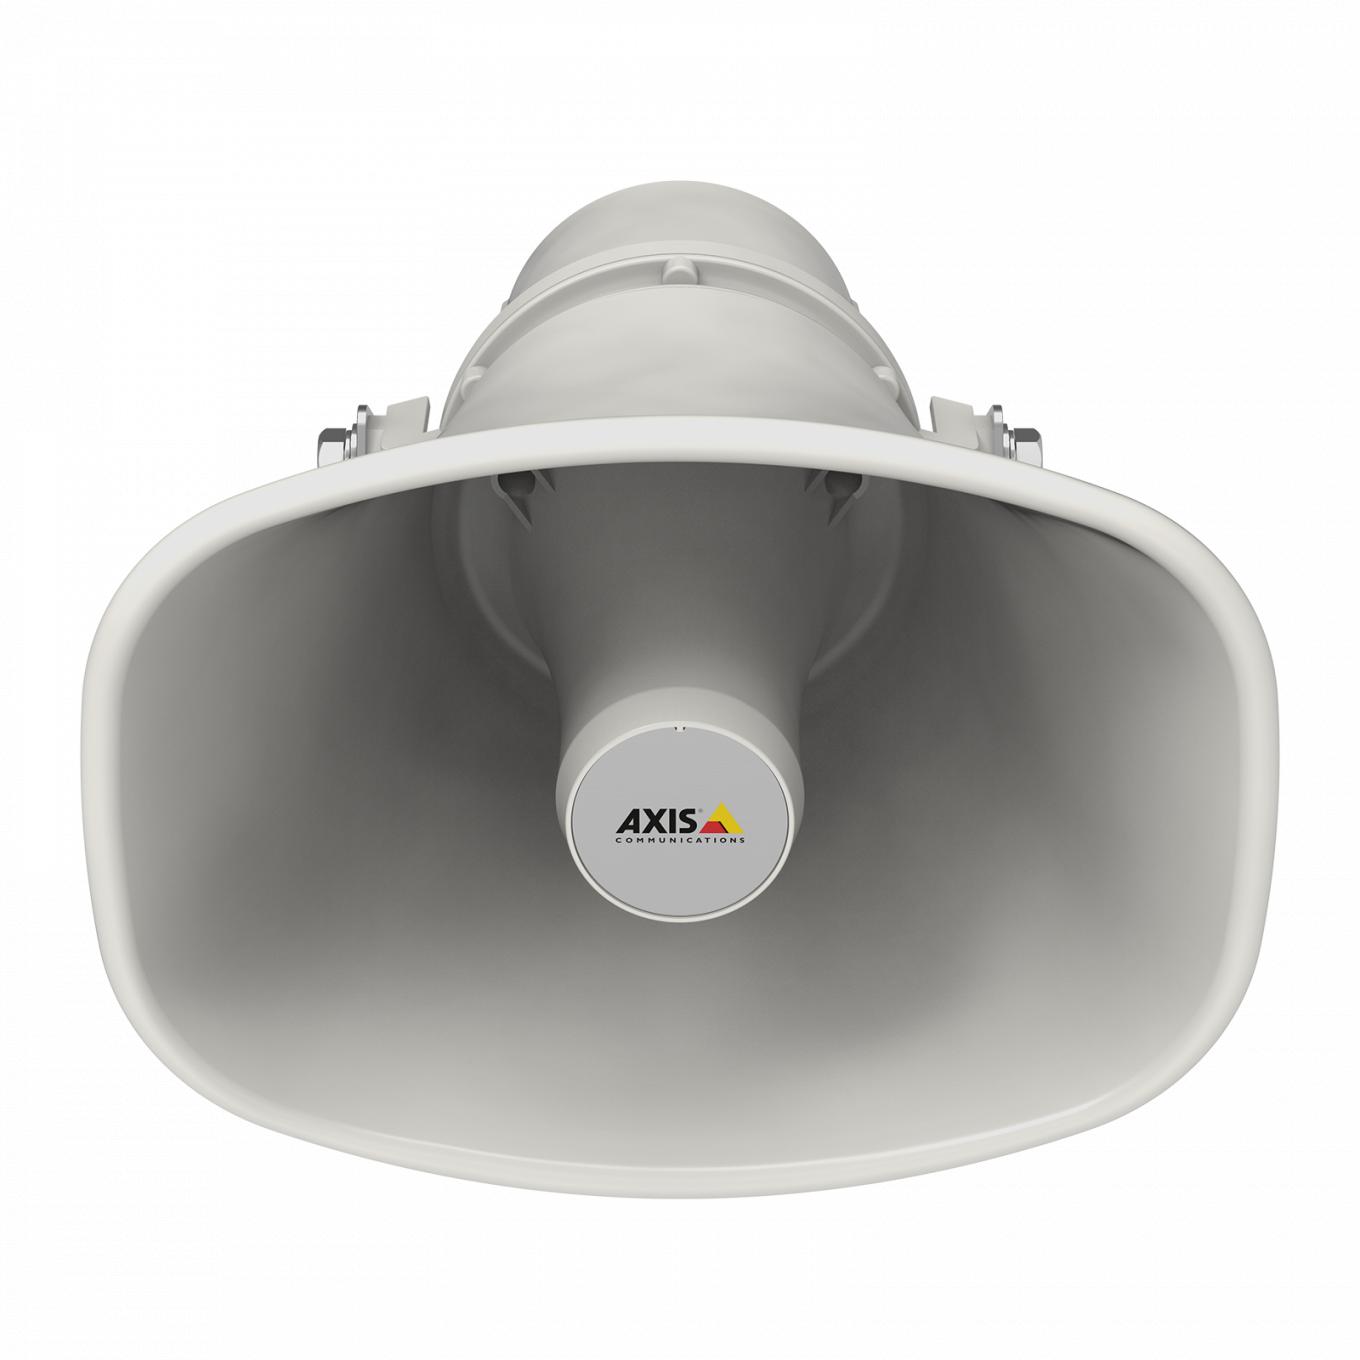 Сетевой громкоговоритель AXIS C1310-E Network Speaker, вид спереди под углом снизу